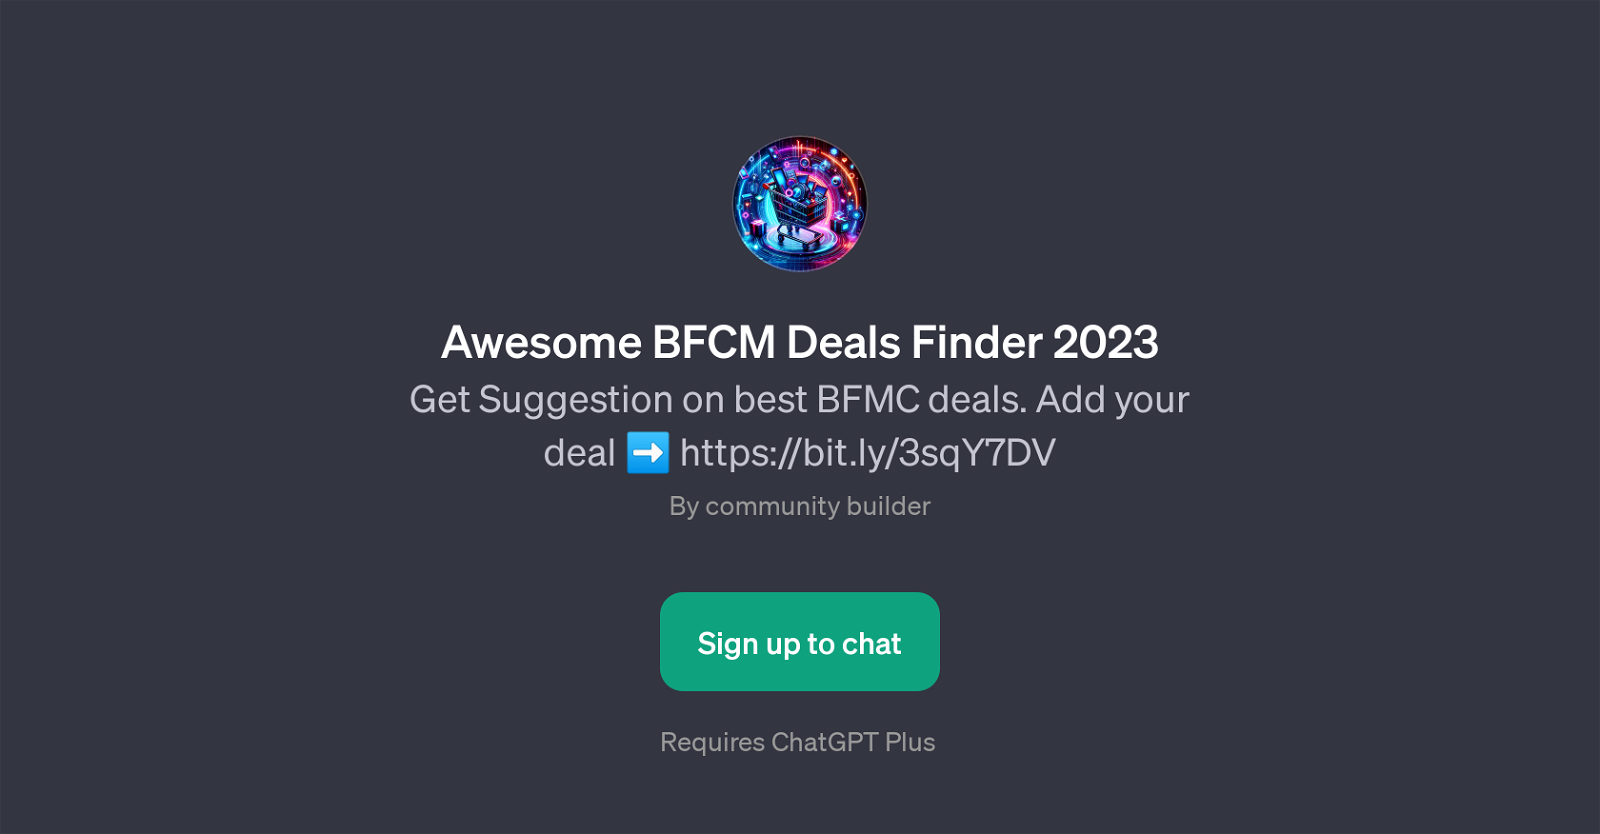 Awesome BFCM Deals Finder 2023 website